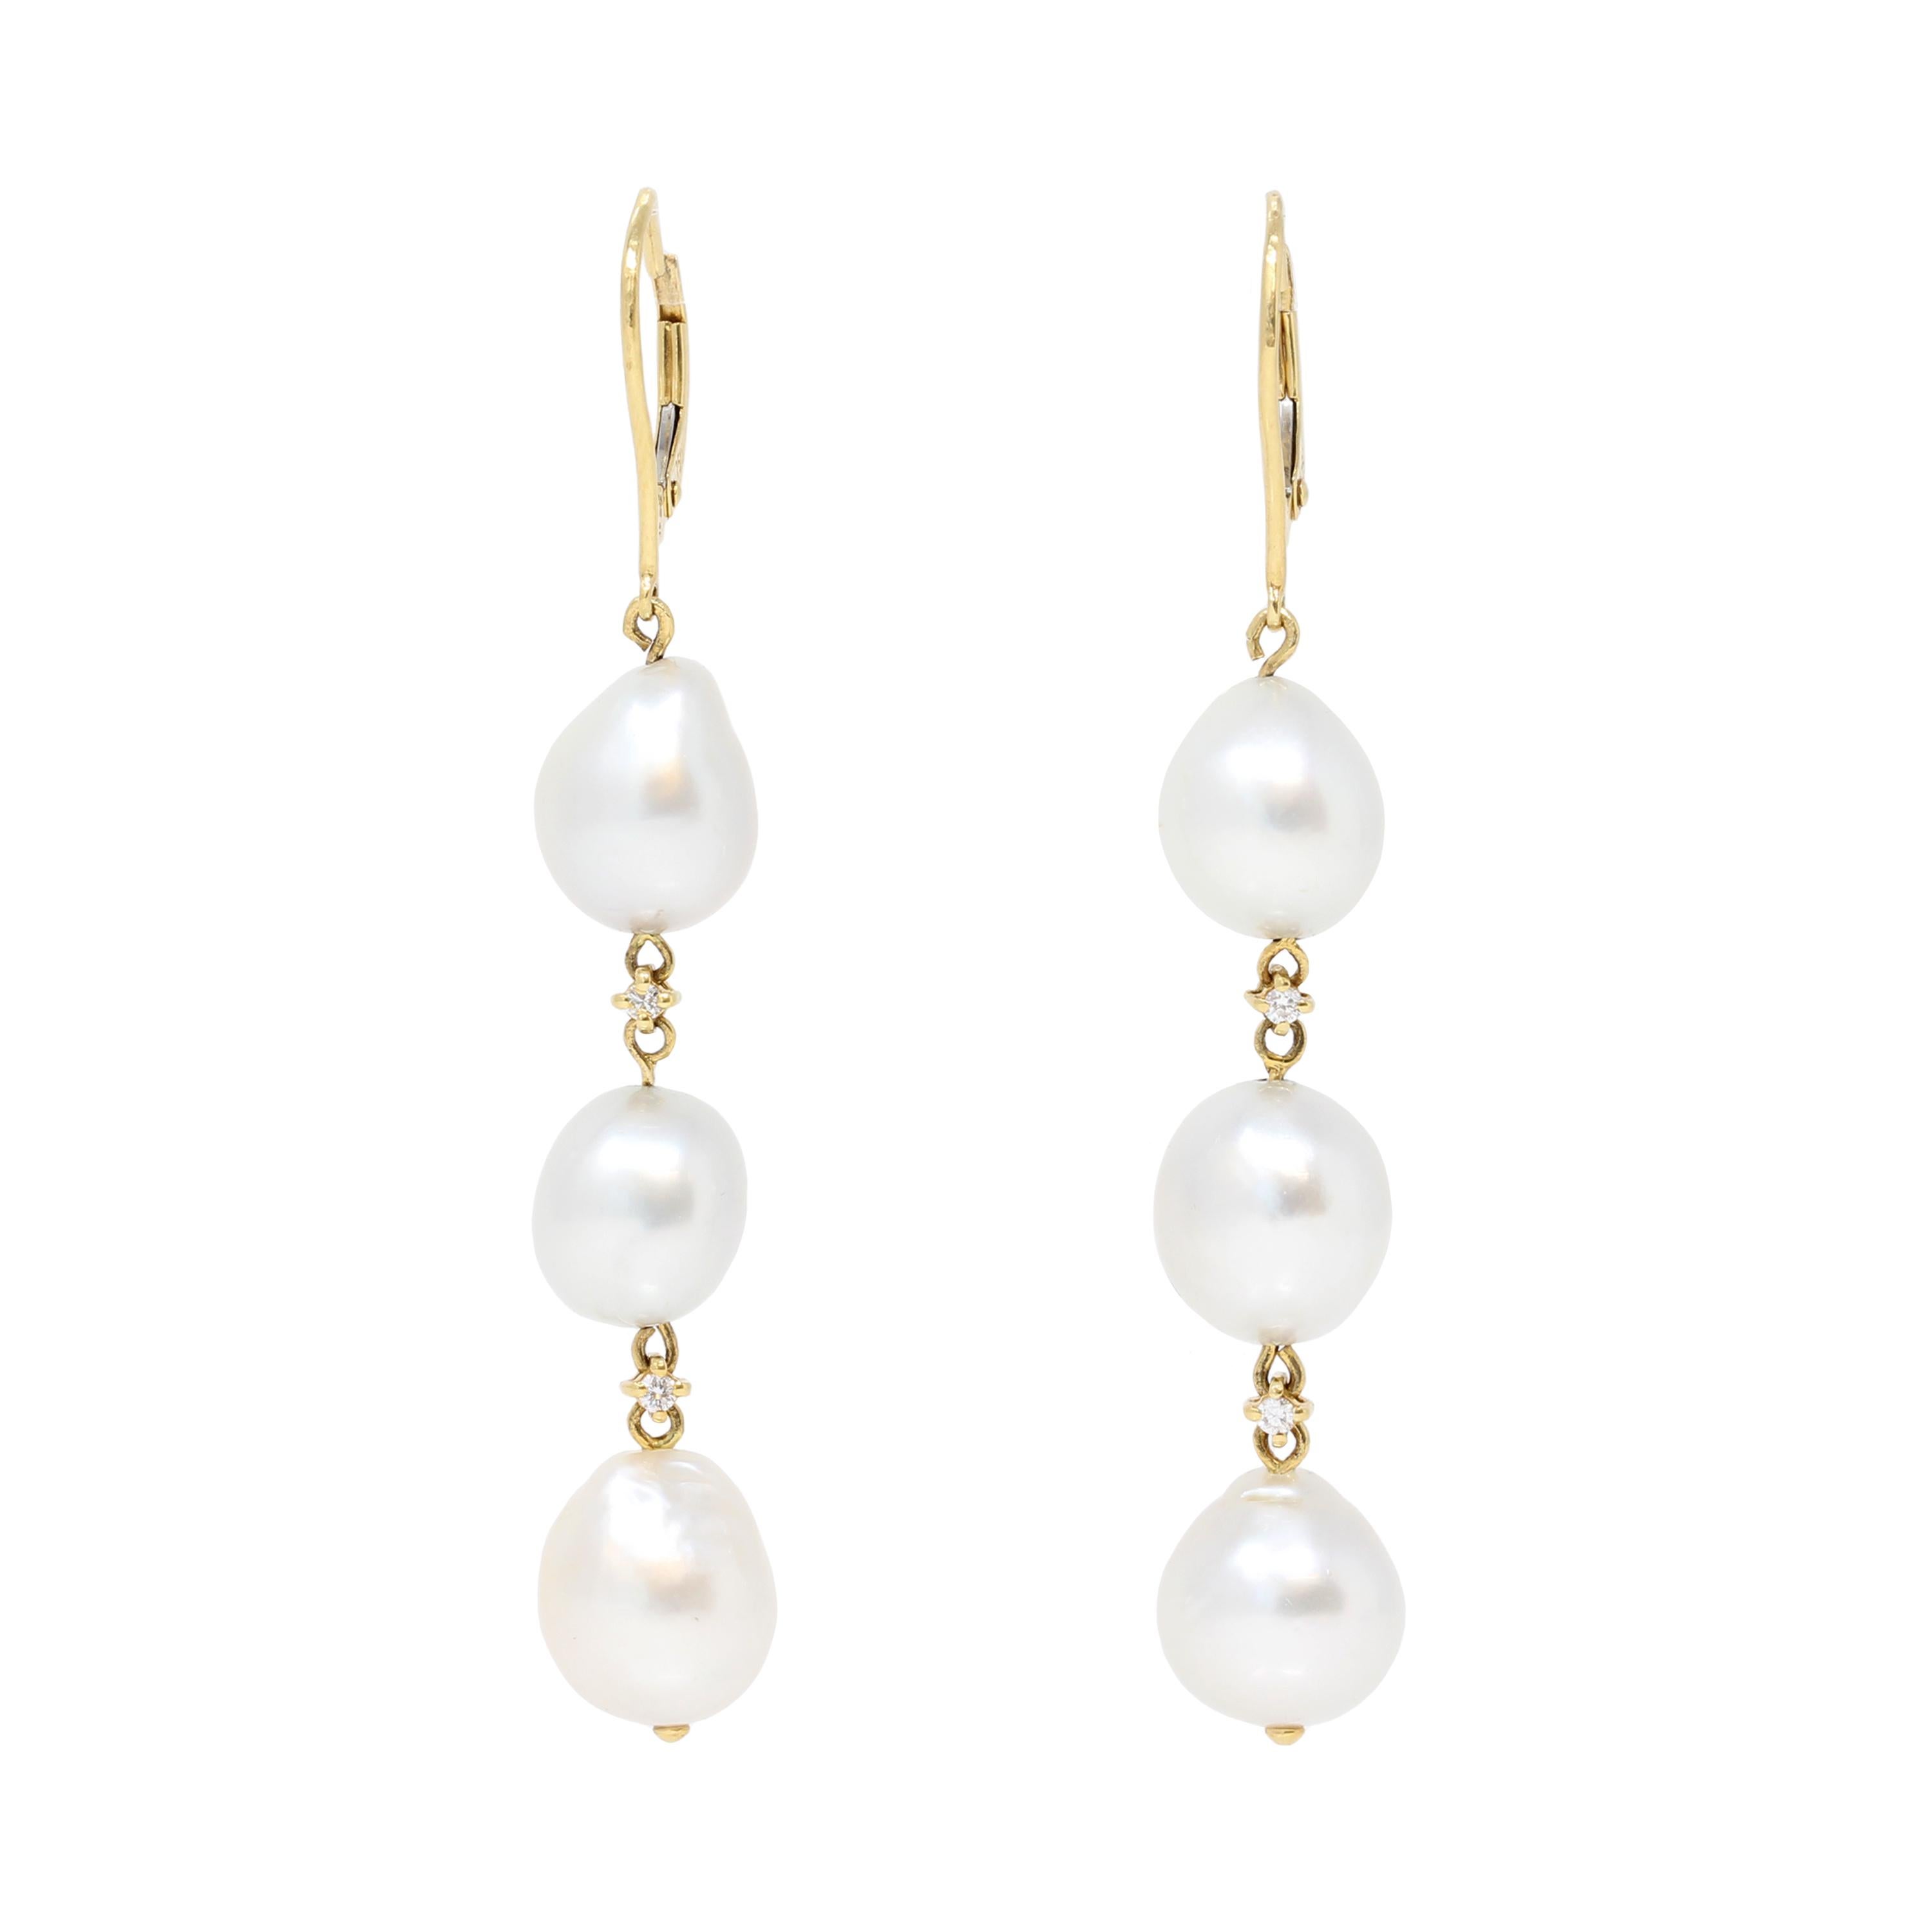 Paire de boucles d'oreilles pendantes en perles baroques des mers du Sud en or jaune 18 carats avec des accents de diamants. Fabriqué au début du siècle,  ces boucles d'oreilles présentent trois perles de 10 à 11 millimètres avec un très bon éclat